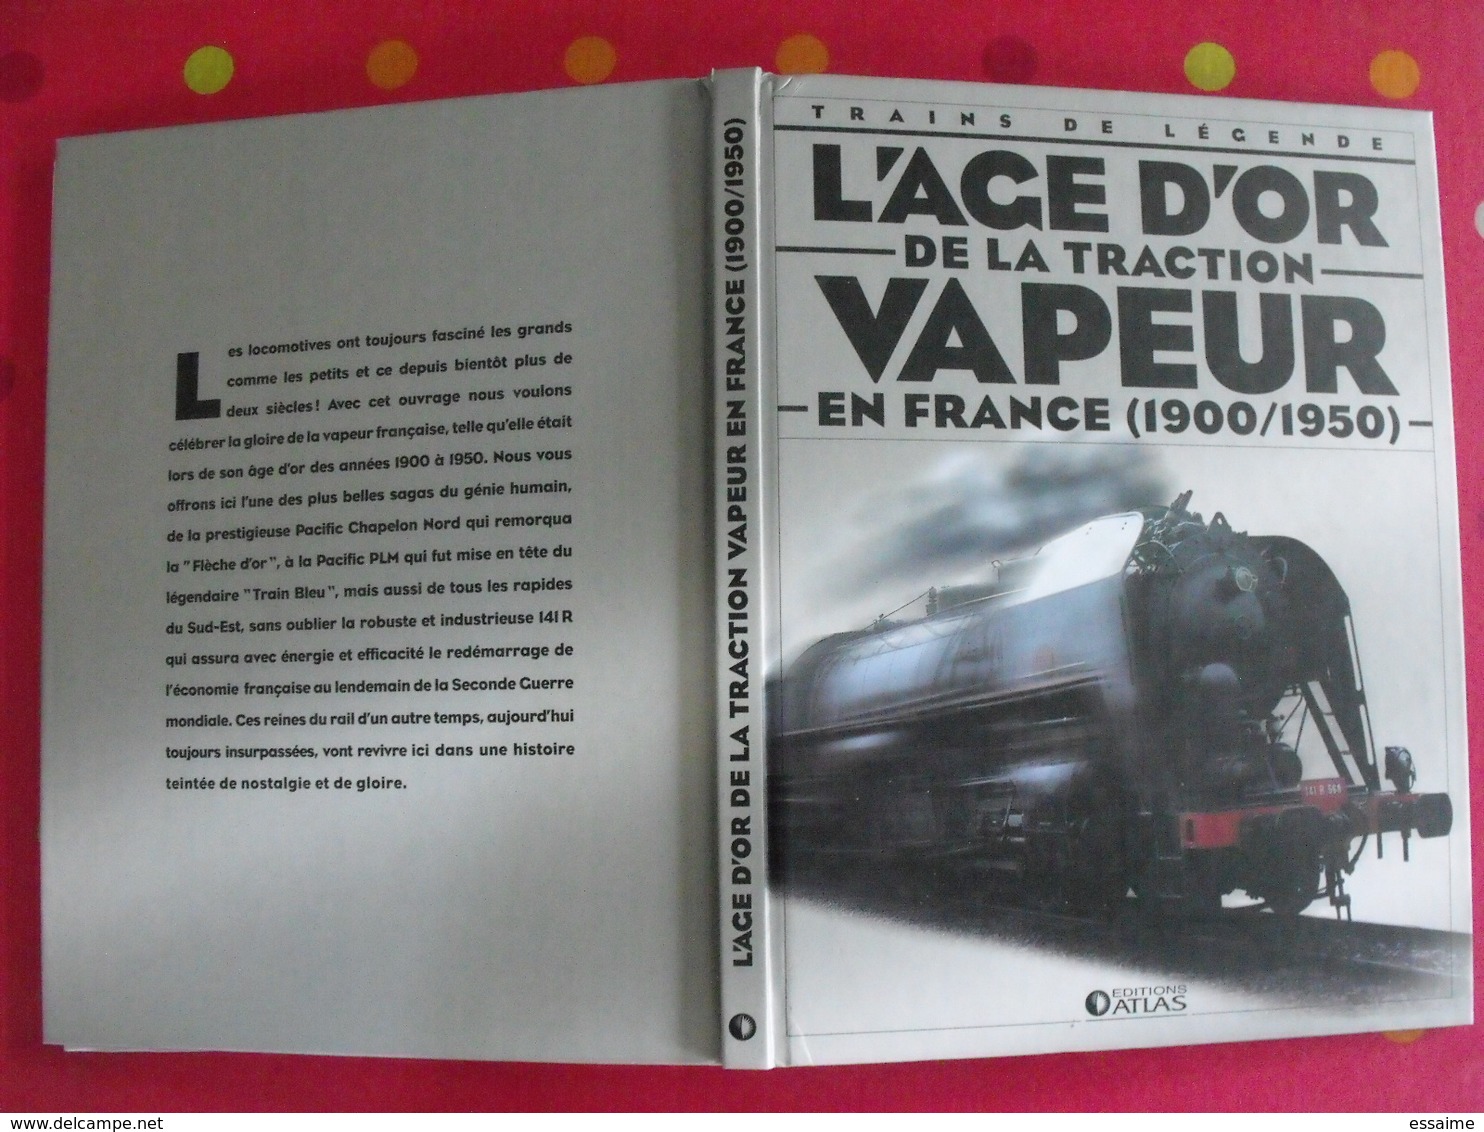 L'age D'or De La Traction Vapeur En France (1900-1950). Trains De Légende. Clive Lamming. Atlas 2005 + Poster - Railway & Tramway